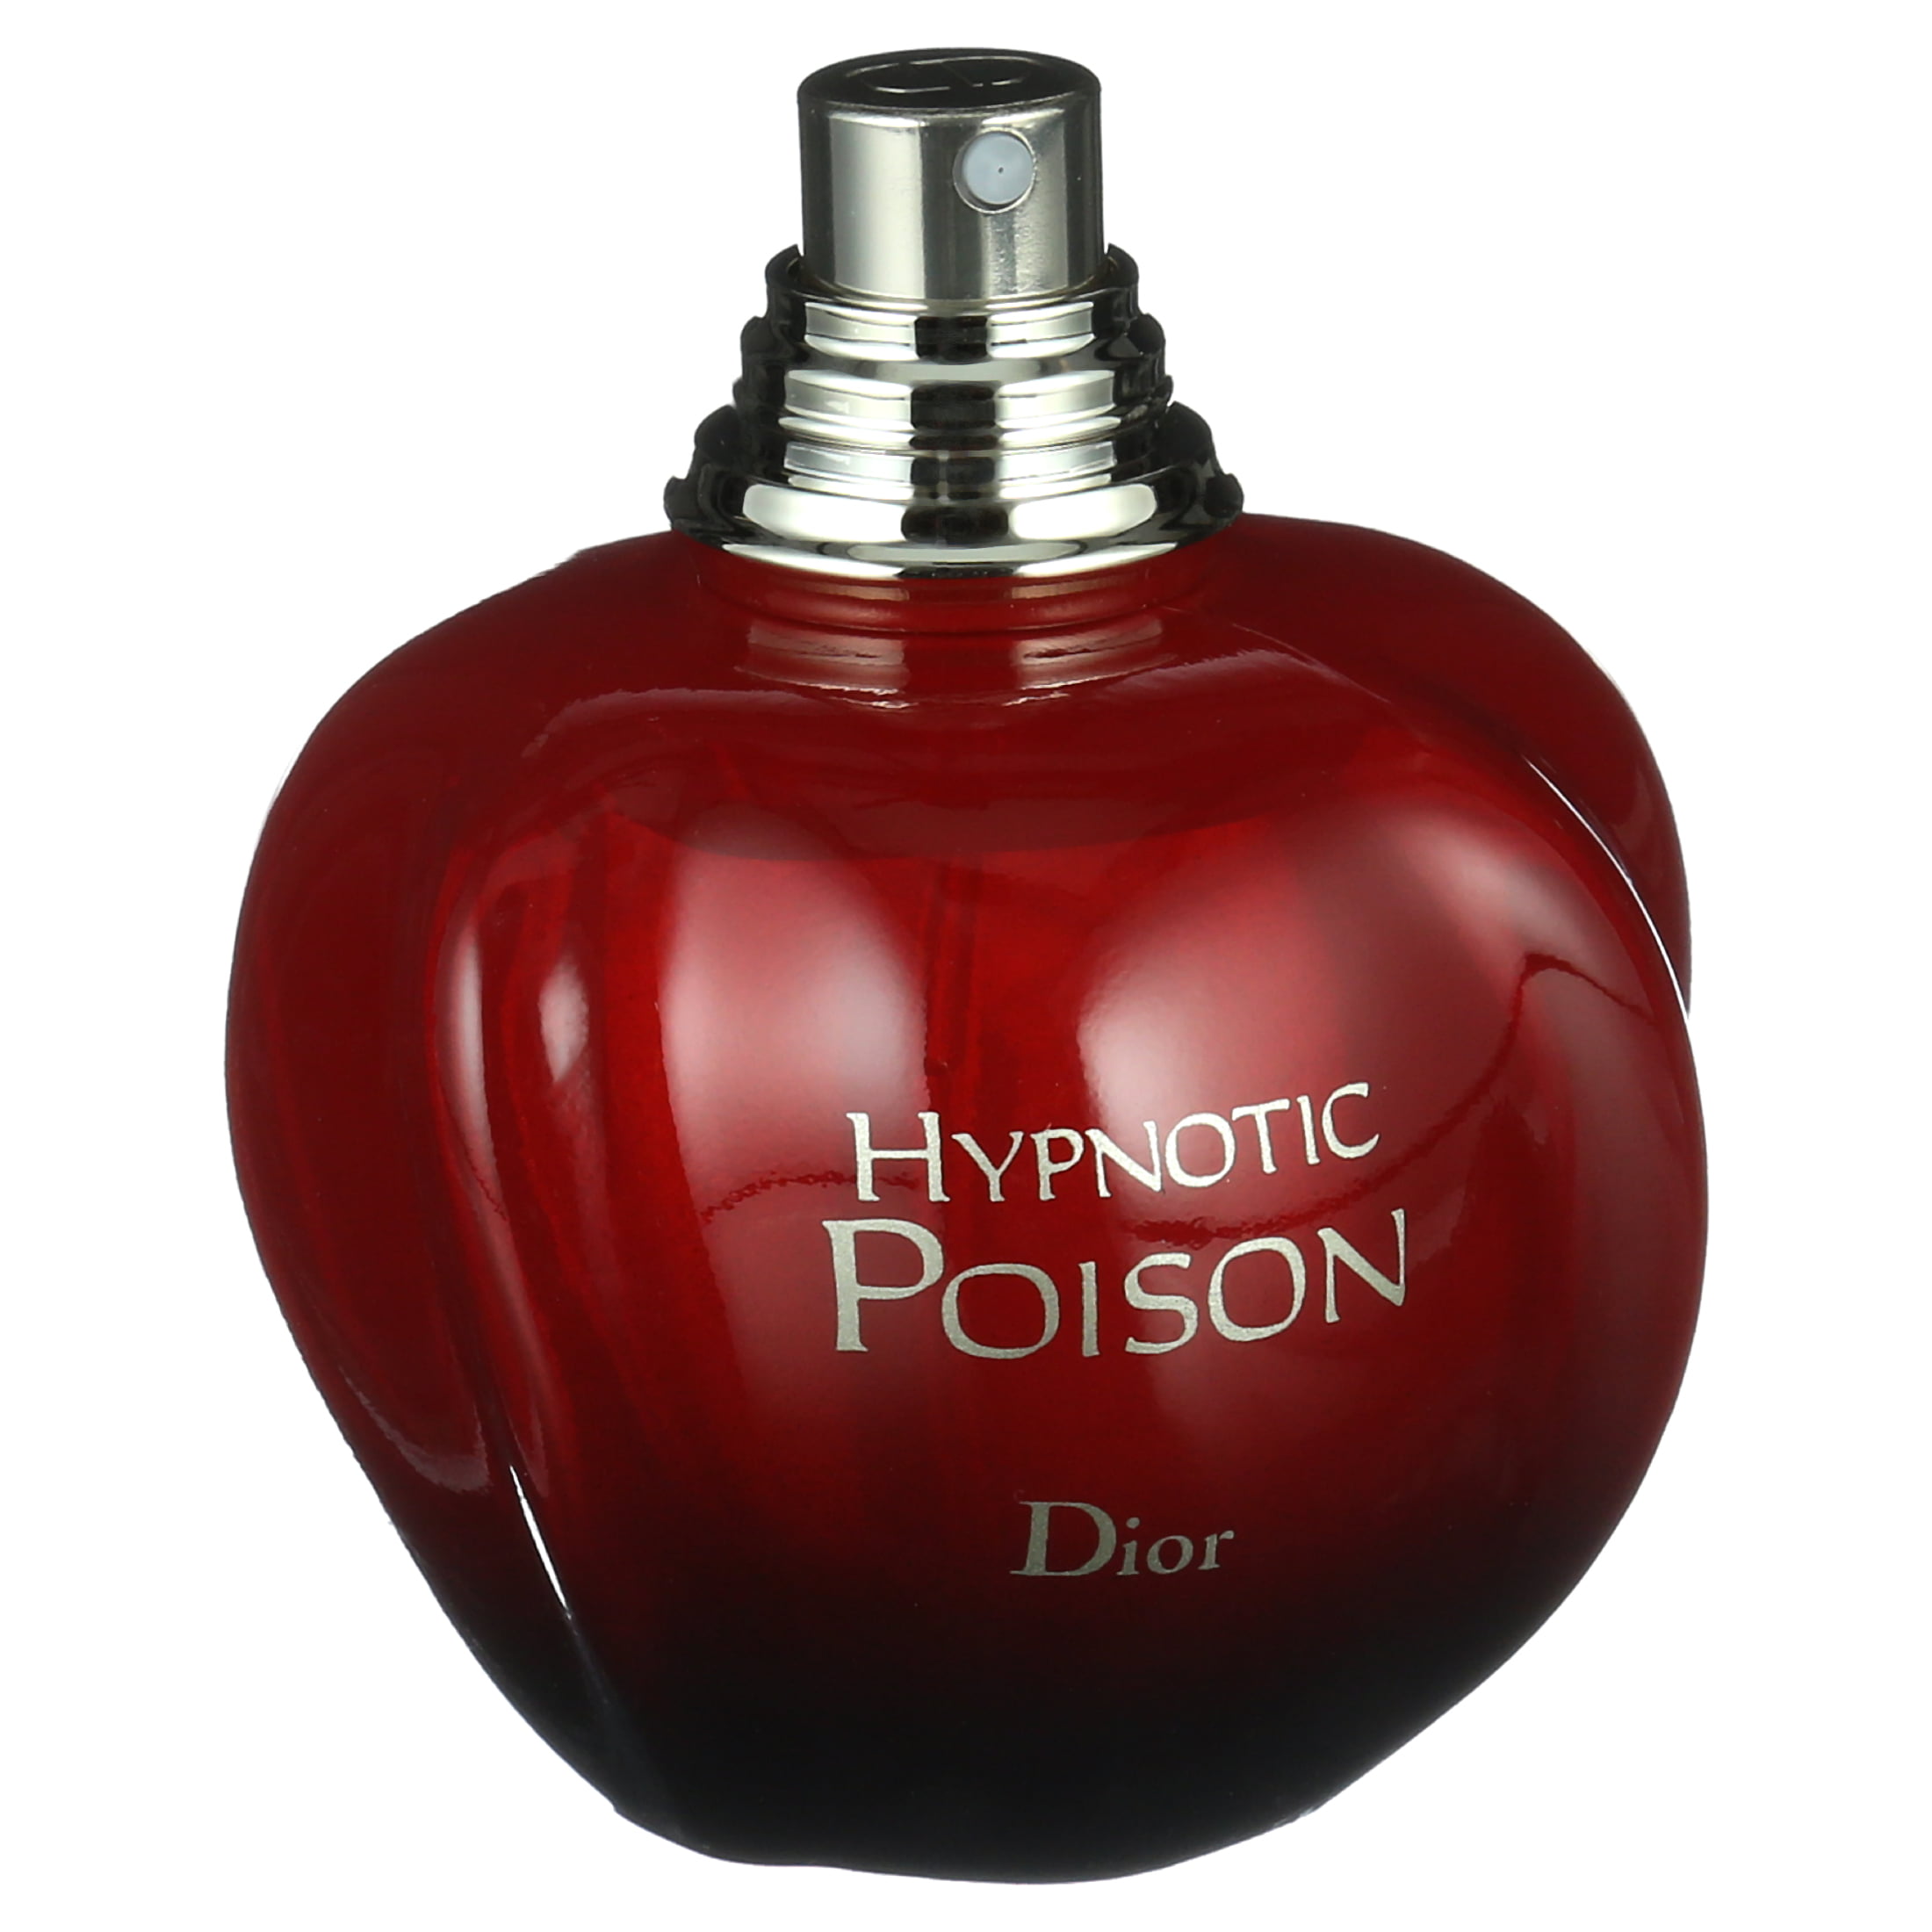 Dior Hypnotic Poison Eau de Toilette, Perfume for Women, 1.7 Oz